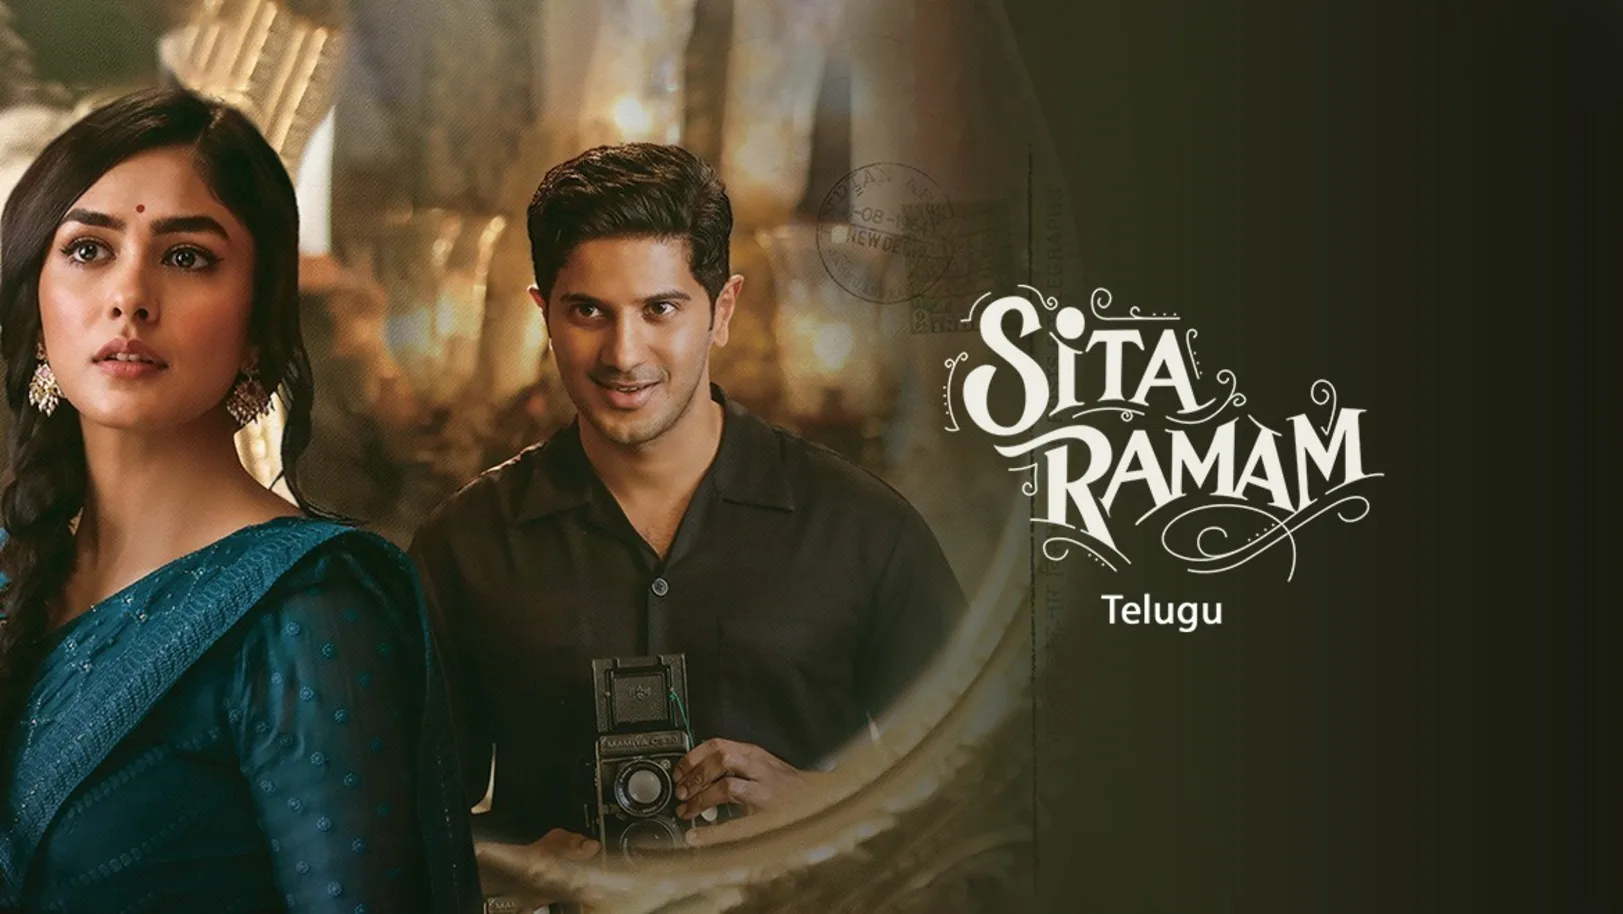 Sita Ramam Movie